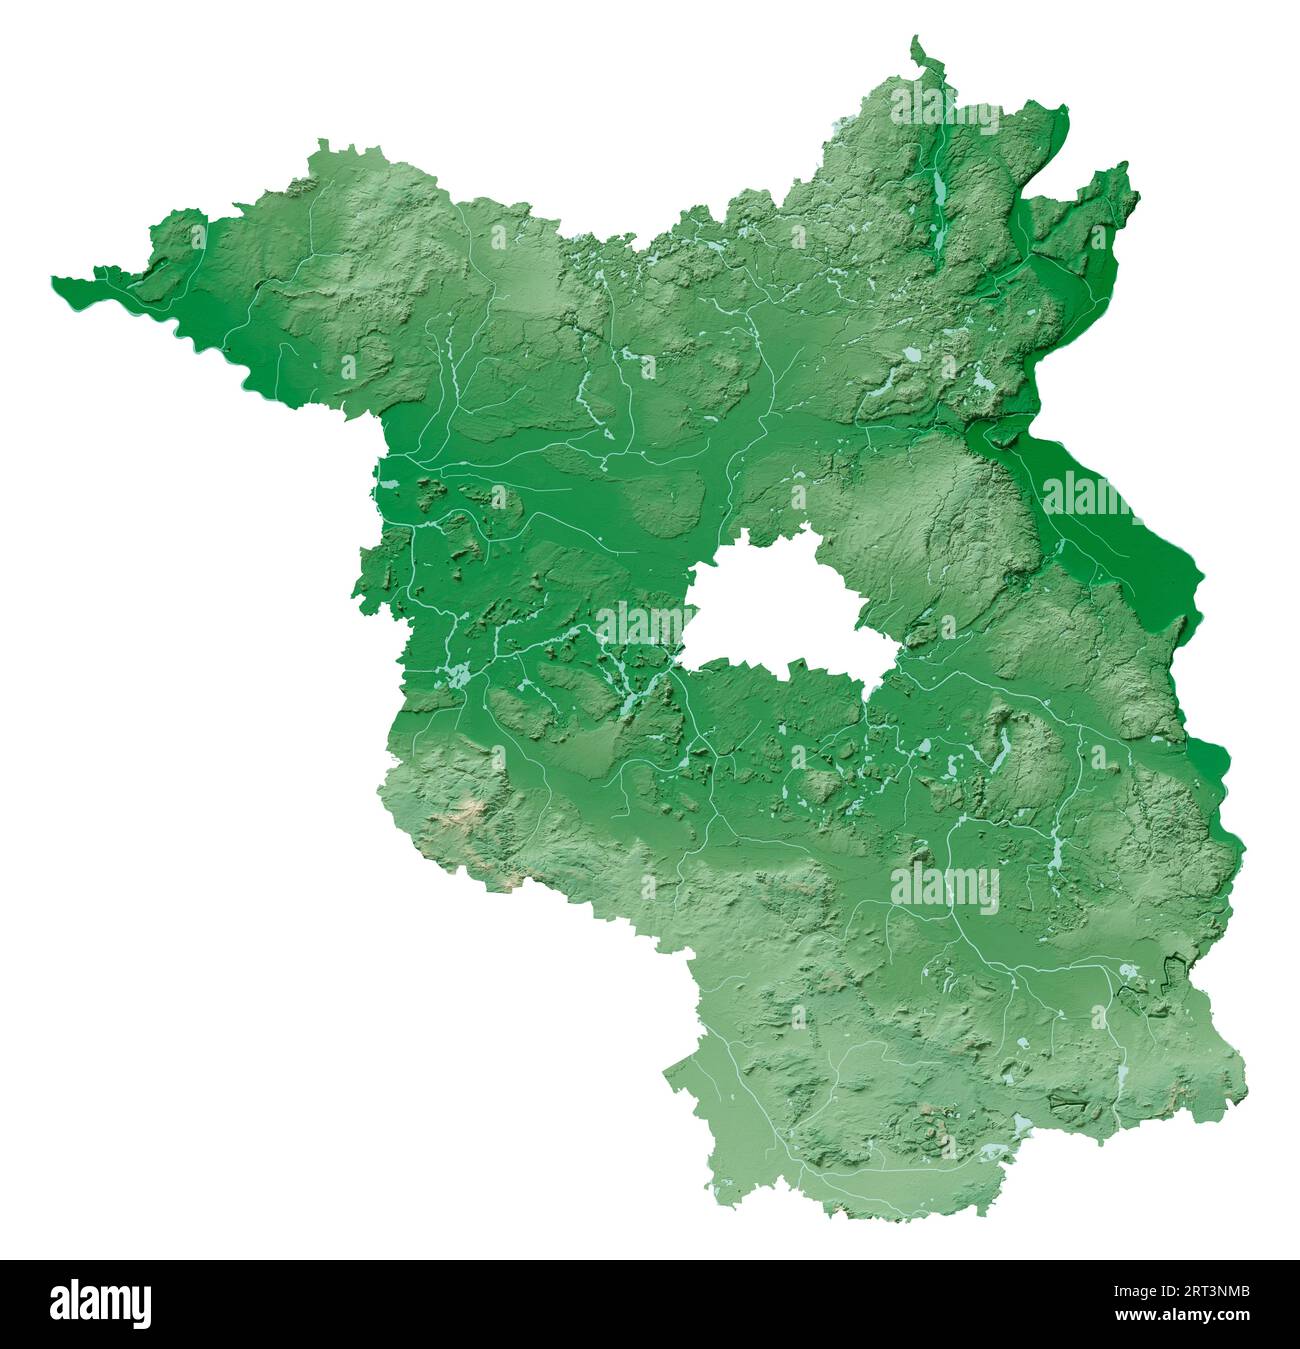 Brandeburgo. Stato tedesco (Land). Rendering 3D dettagliato di una mappa di rilievo ombreggiata con fiumi e laghi. Colorato in base all'elevazione. Sfondo bianco puro. Foto Stock